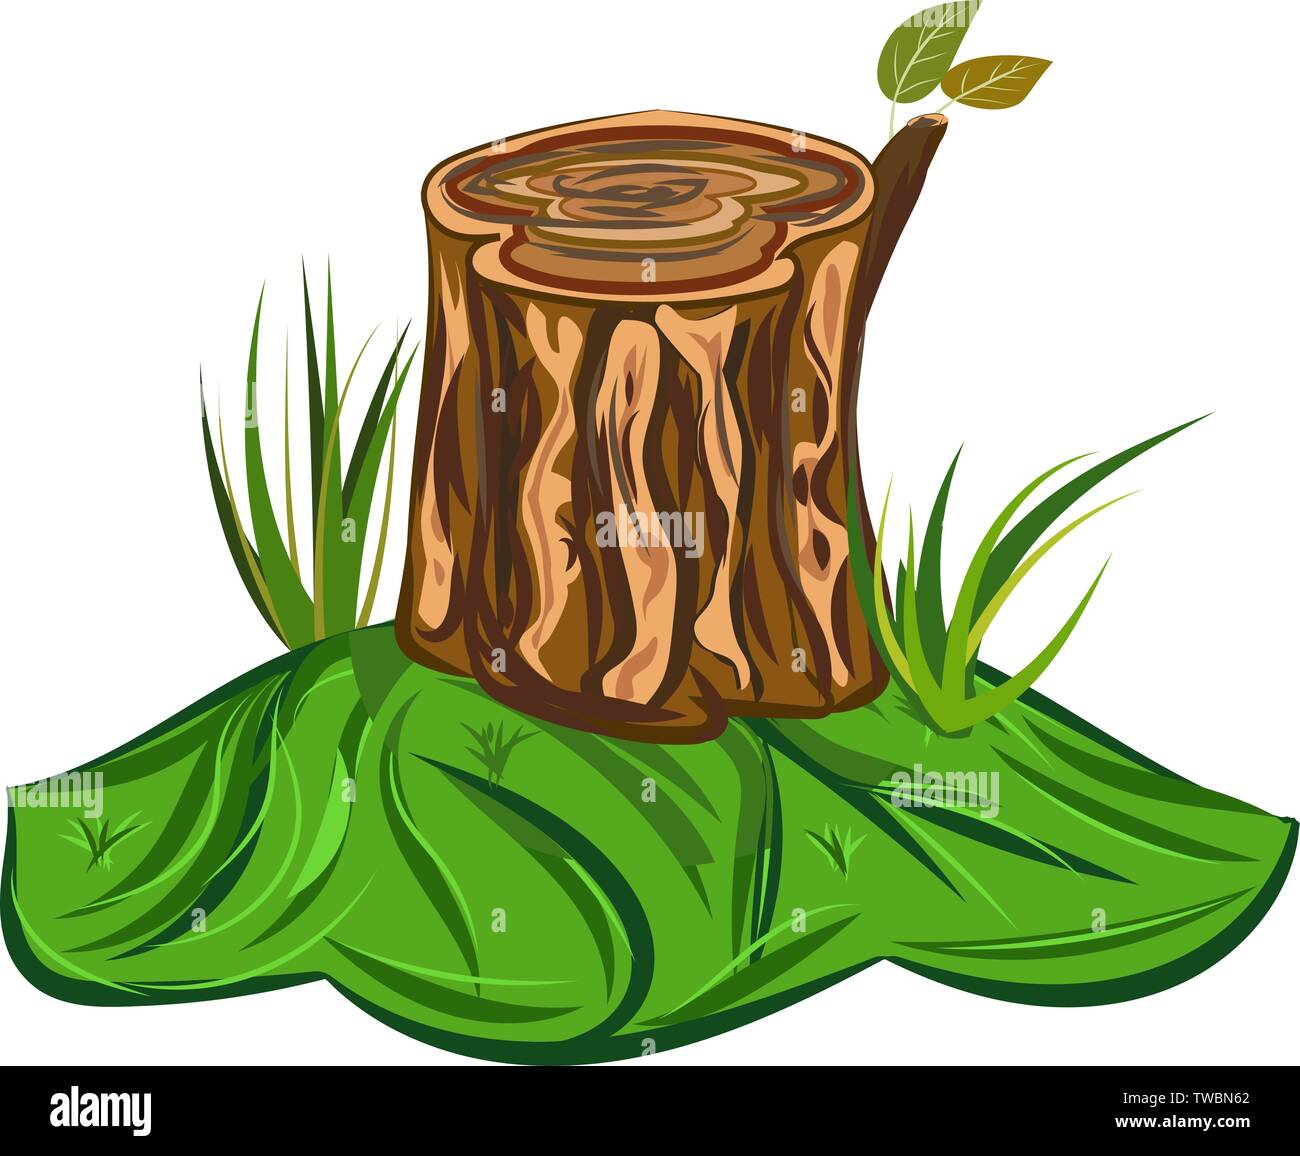 Tocón de árbol ilustración vectorial de una historieta gran tocón de árbol con hojas de sobremesa y algunas briznas de hierba Ilustración del Vector